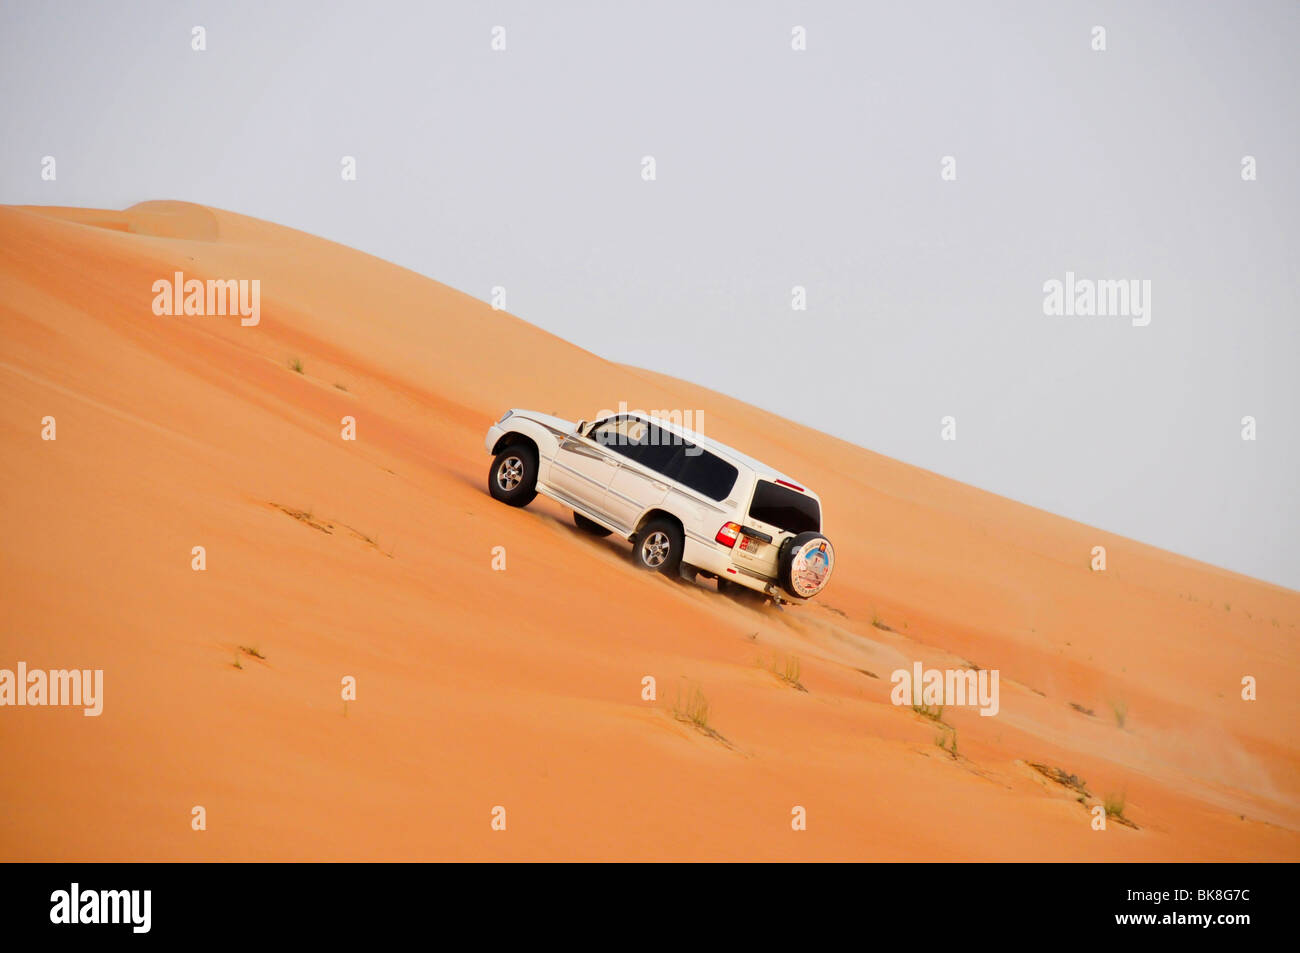 Les habitants de la Dune-frappant avec leur jeep, oasis de Liwa, Abu Dhabi, Émirats arabes unis, France, Moyen Orient, Orient Banque D'Images